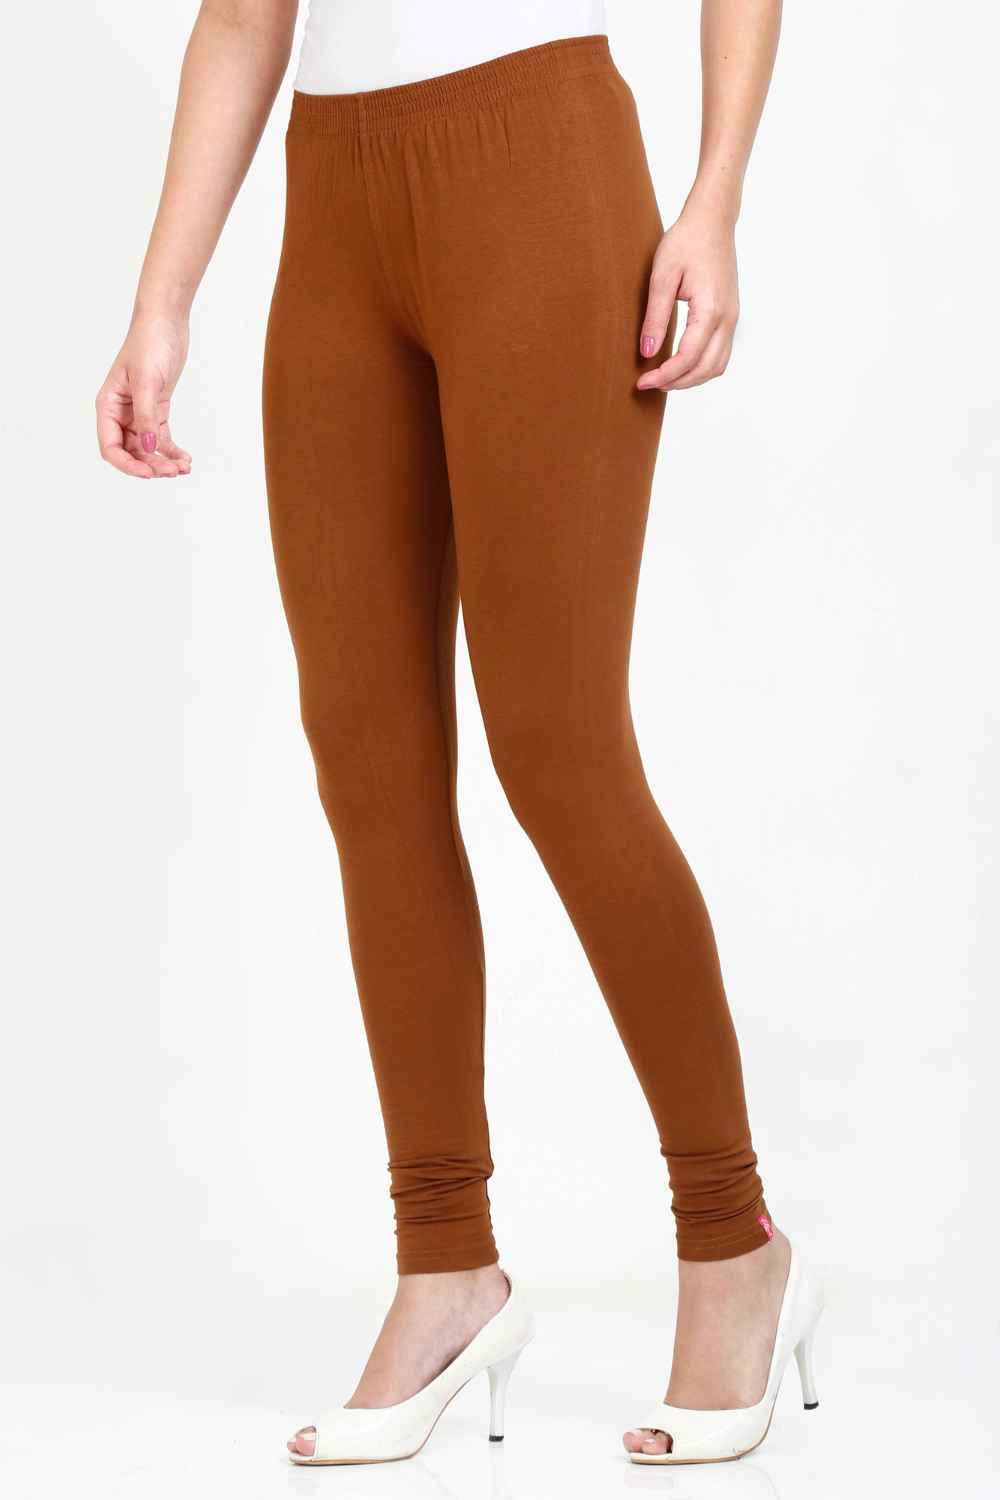 Women's Cotton Lycra Tawny Brown Full length legging